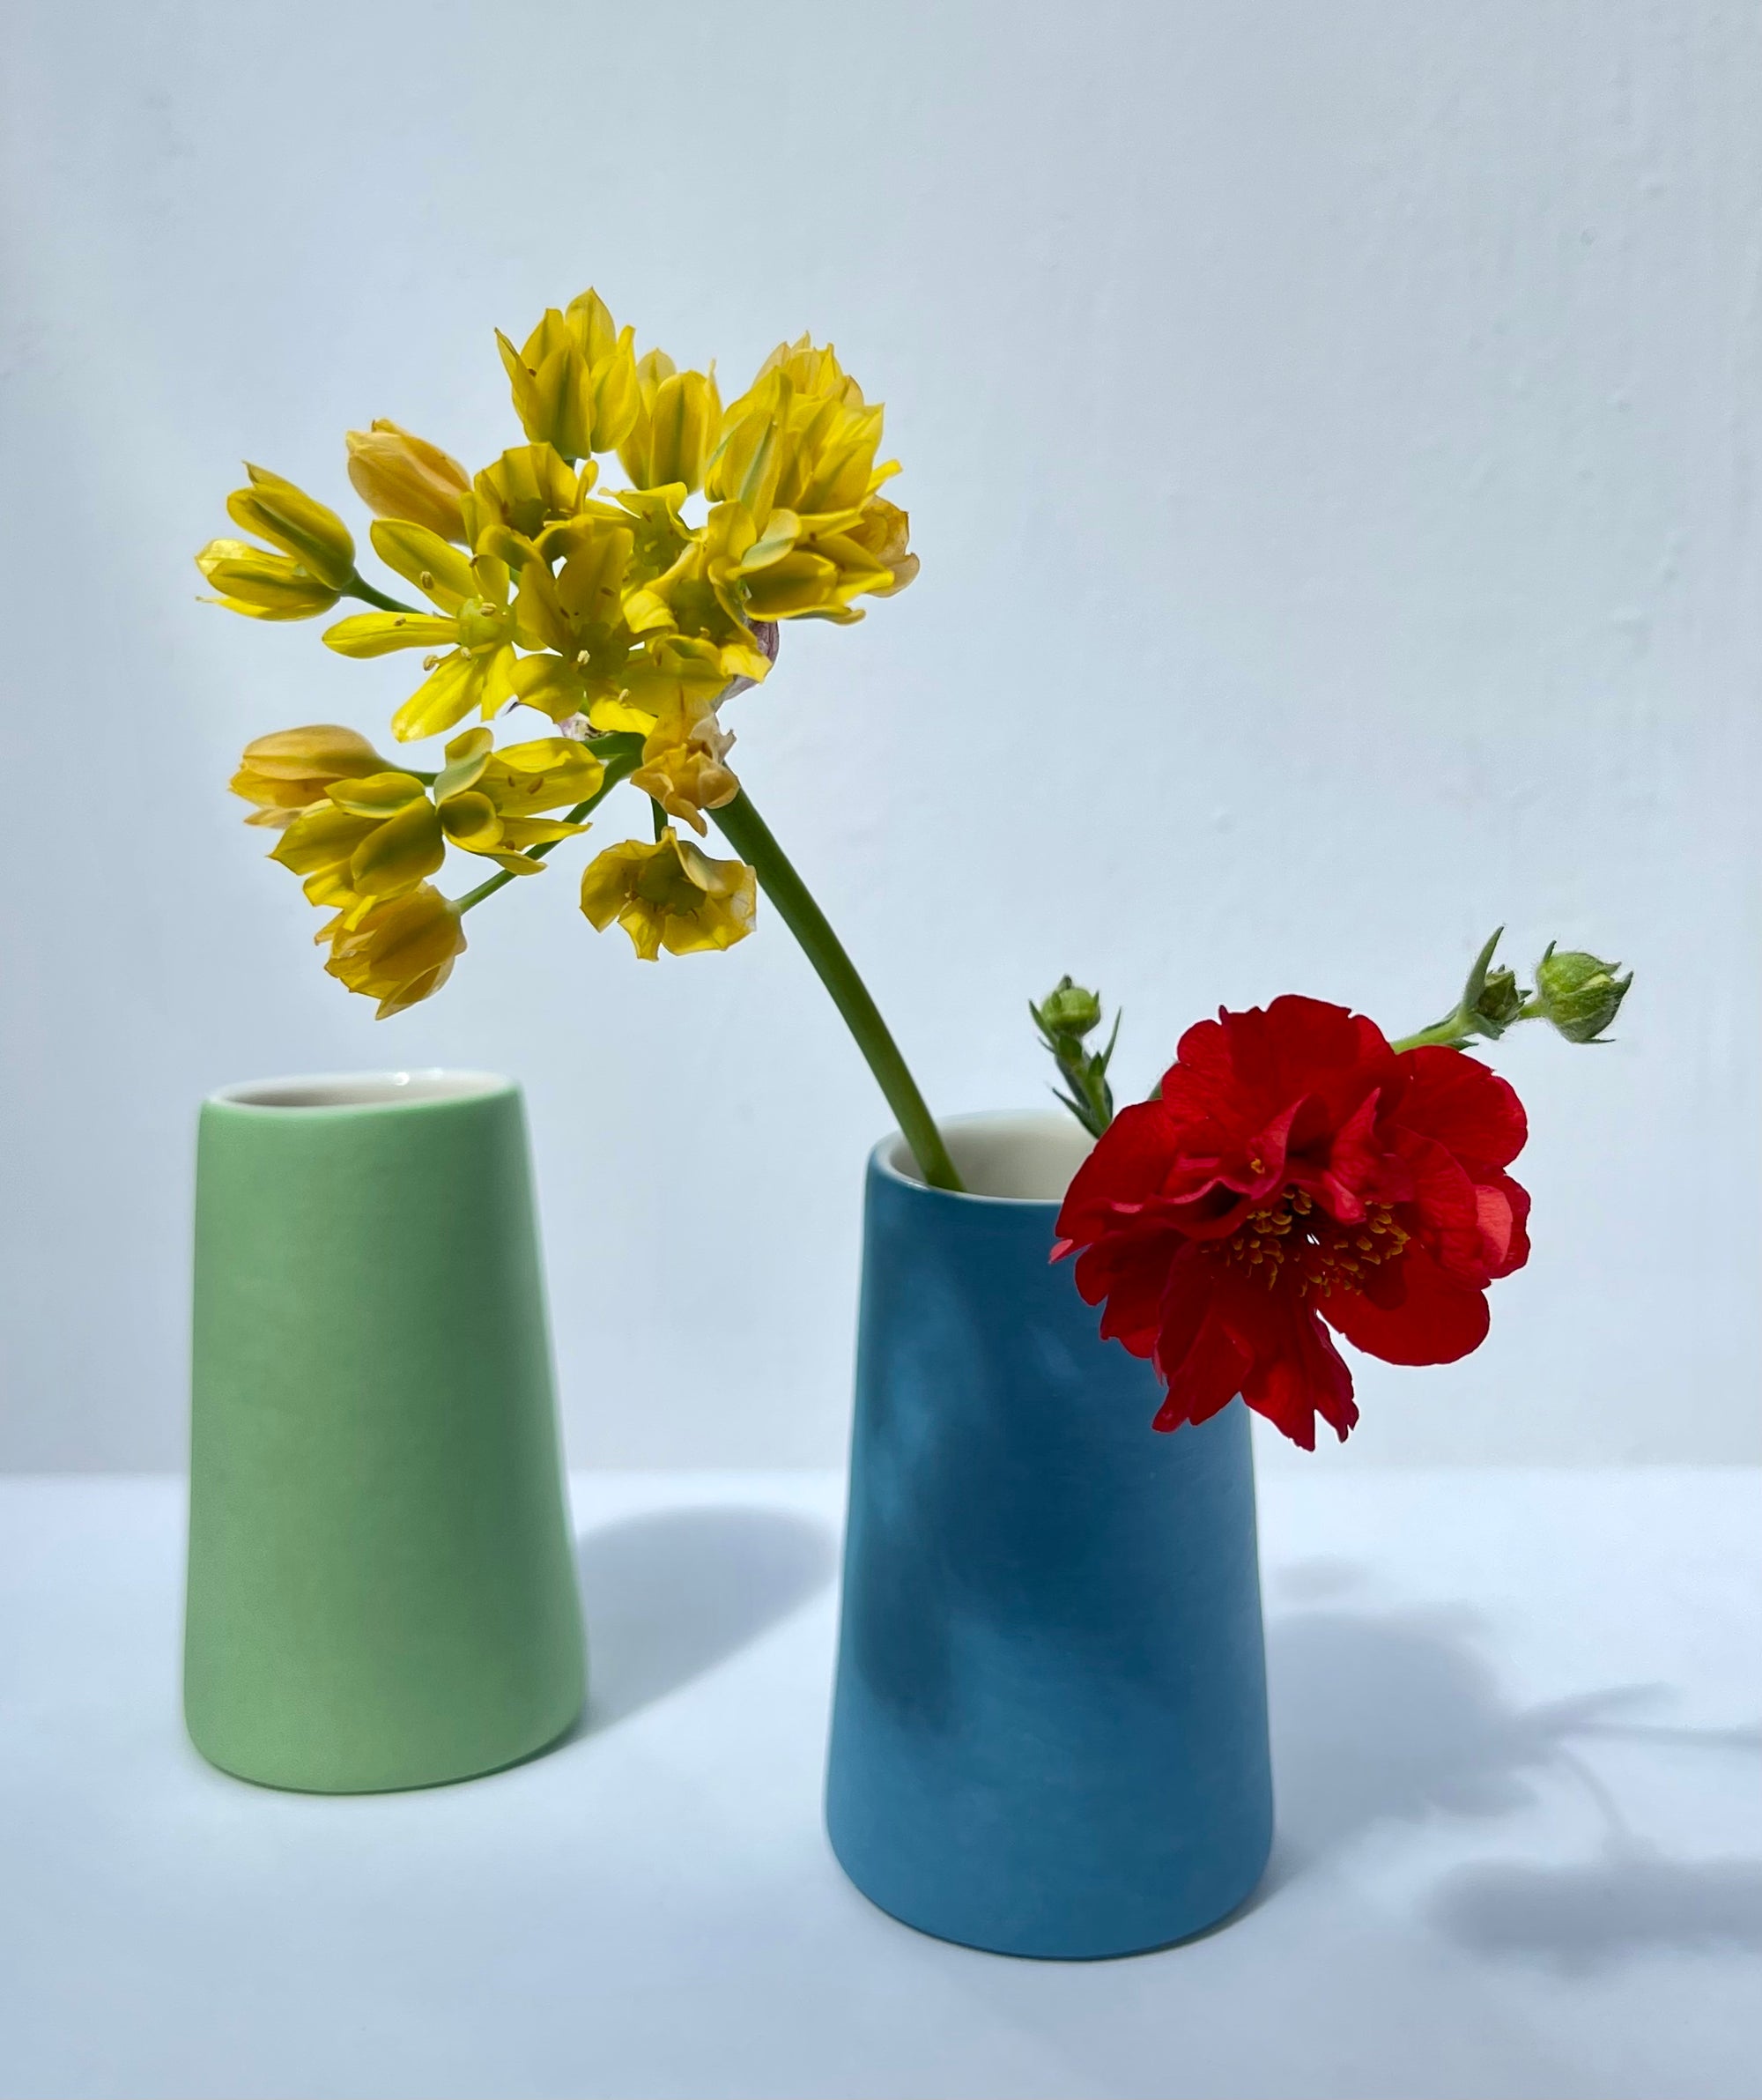 Pair of Mini Vases, Blue & Green, Adele Stanley